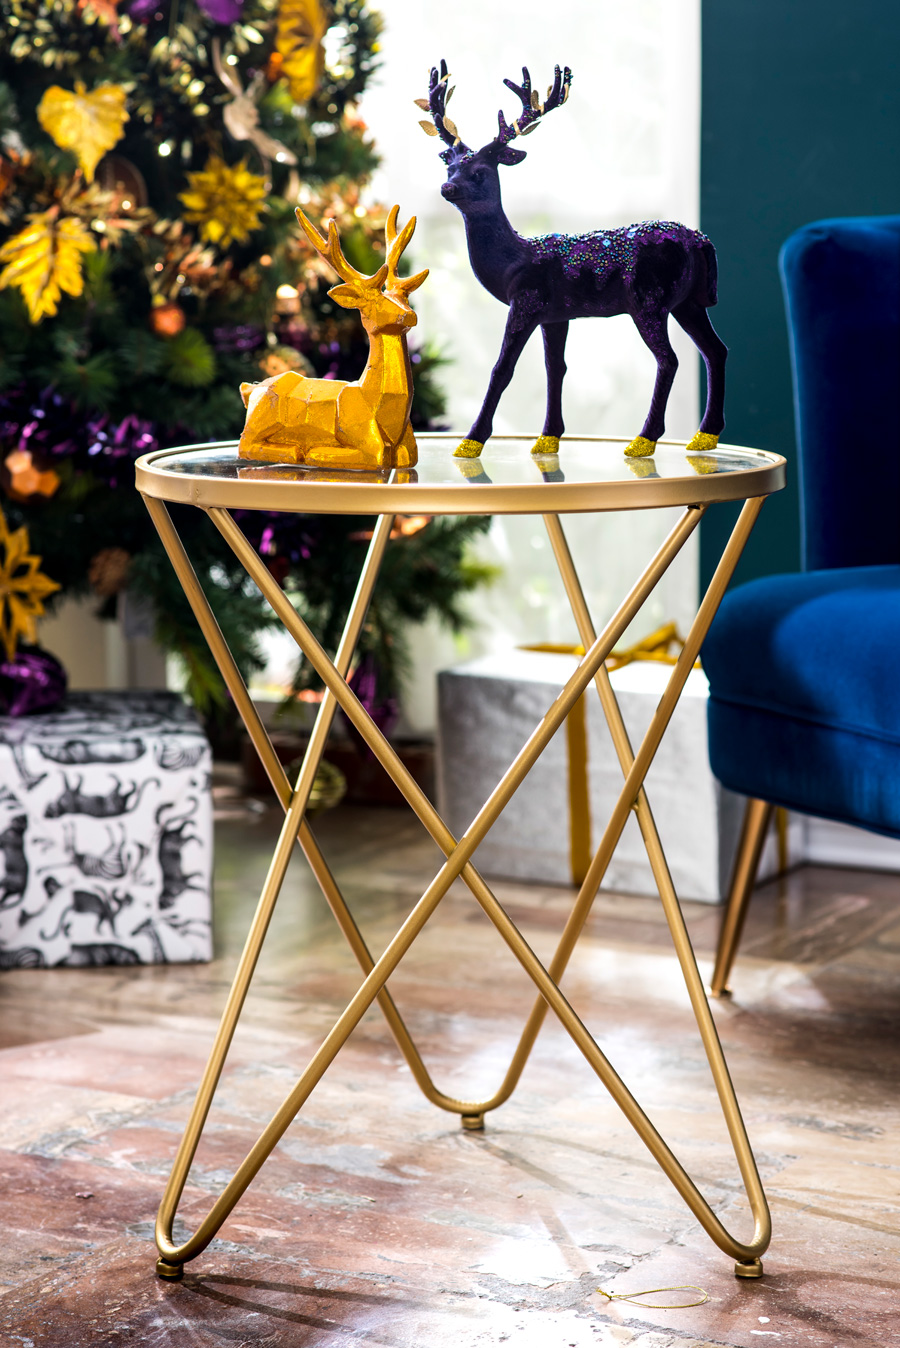 Renos de navidad morado y dorado sobre mesa de patas metálicas doradas